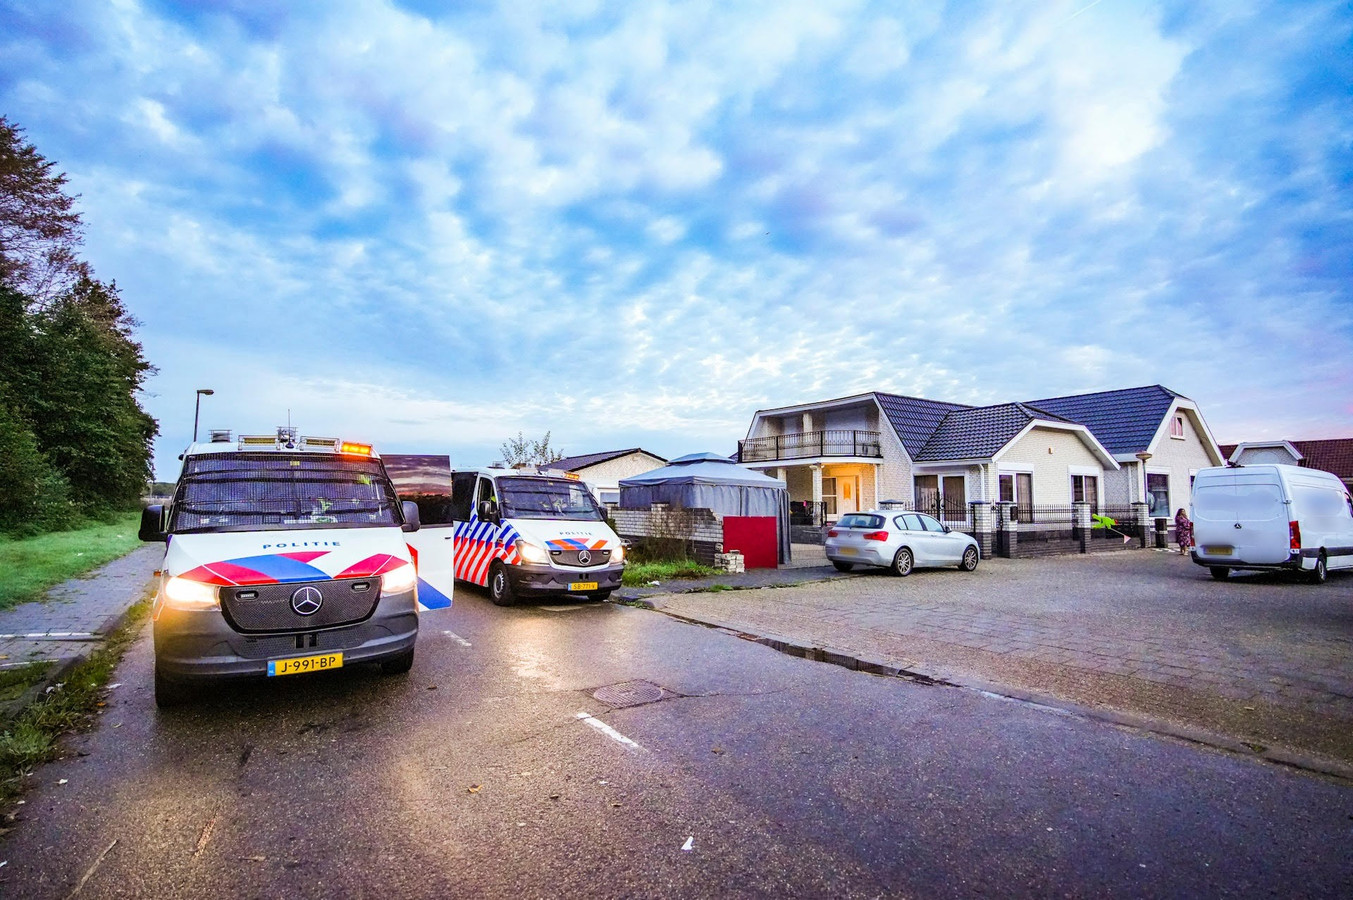 Krimpen Australische persoon Versnel Drugsinvallen bij woonwagens in Eindhoven en autobedrijf in Best, 1000  agenten en militairen landelijk ingezet | Foto | bd.nl